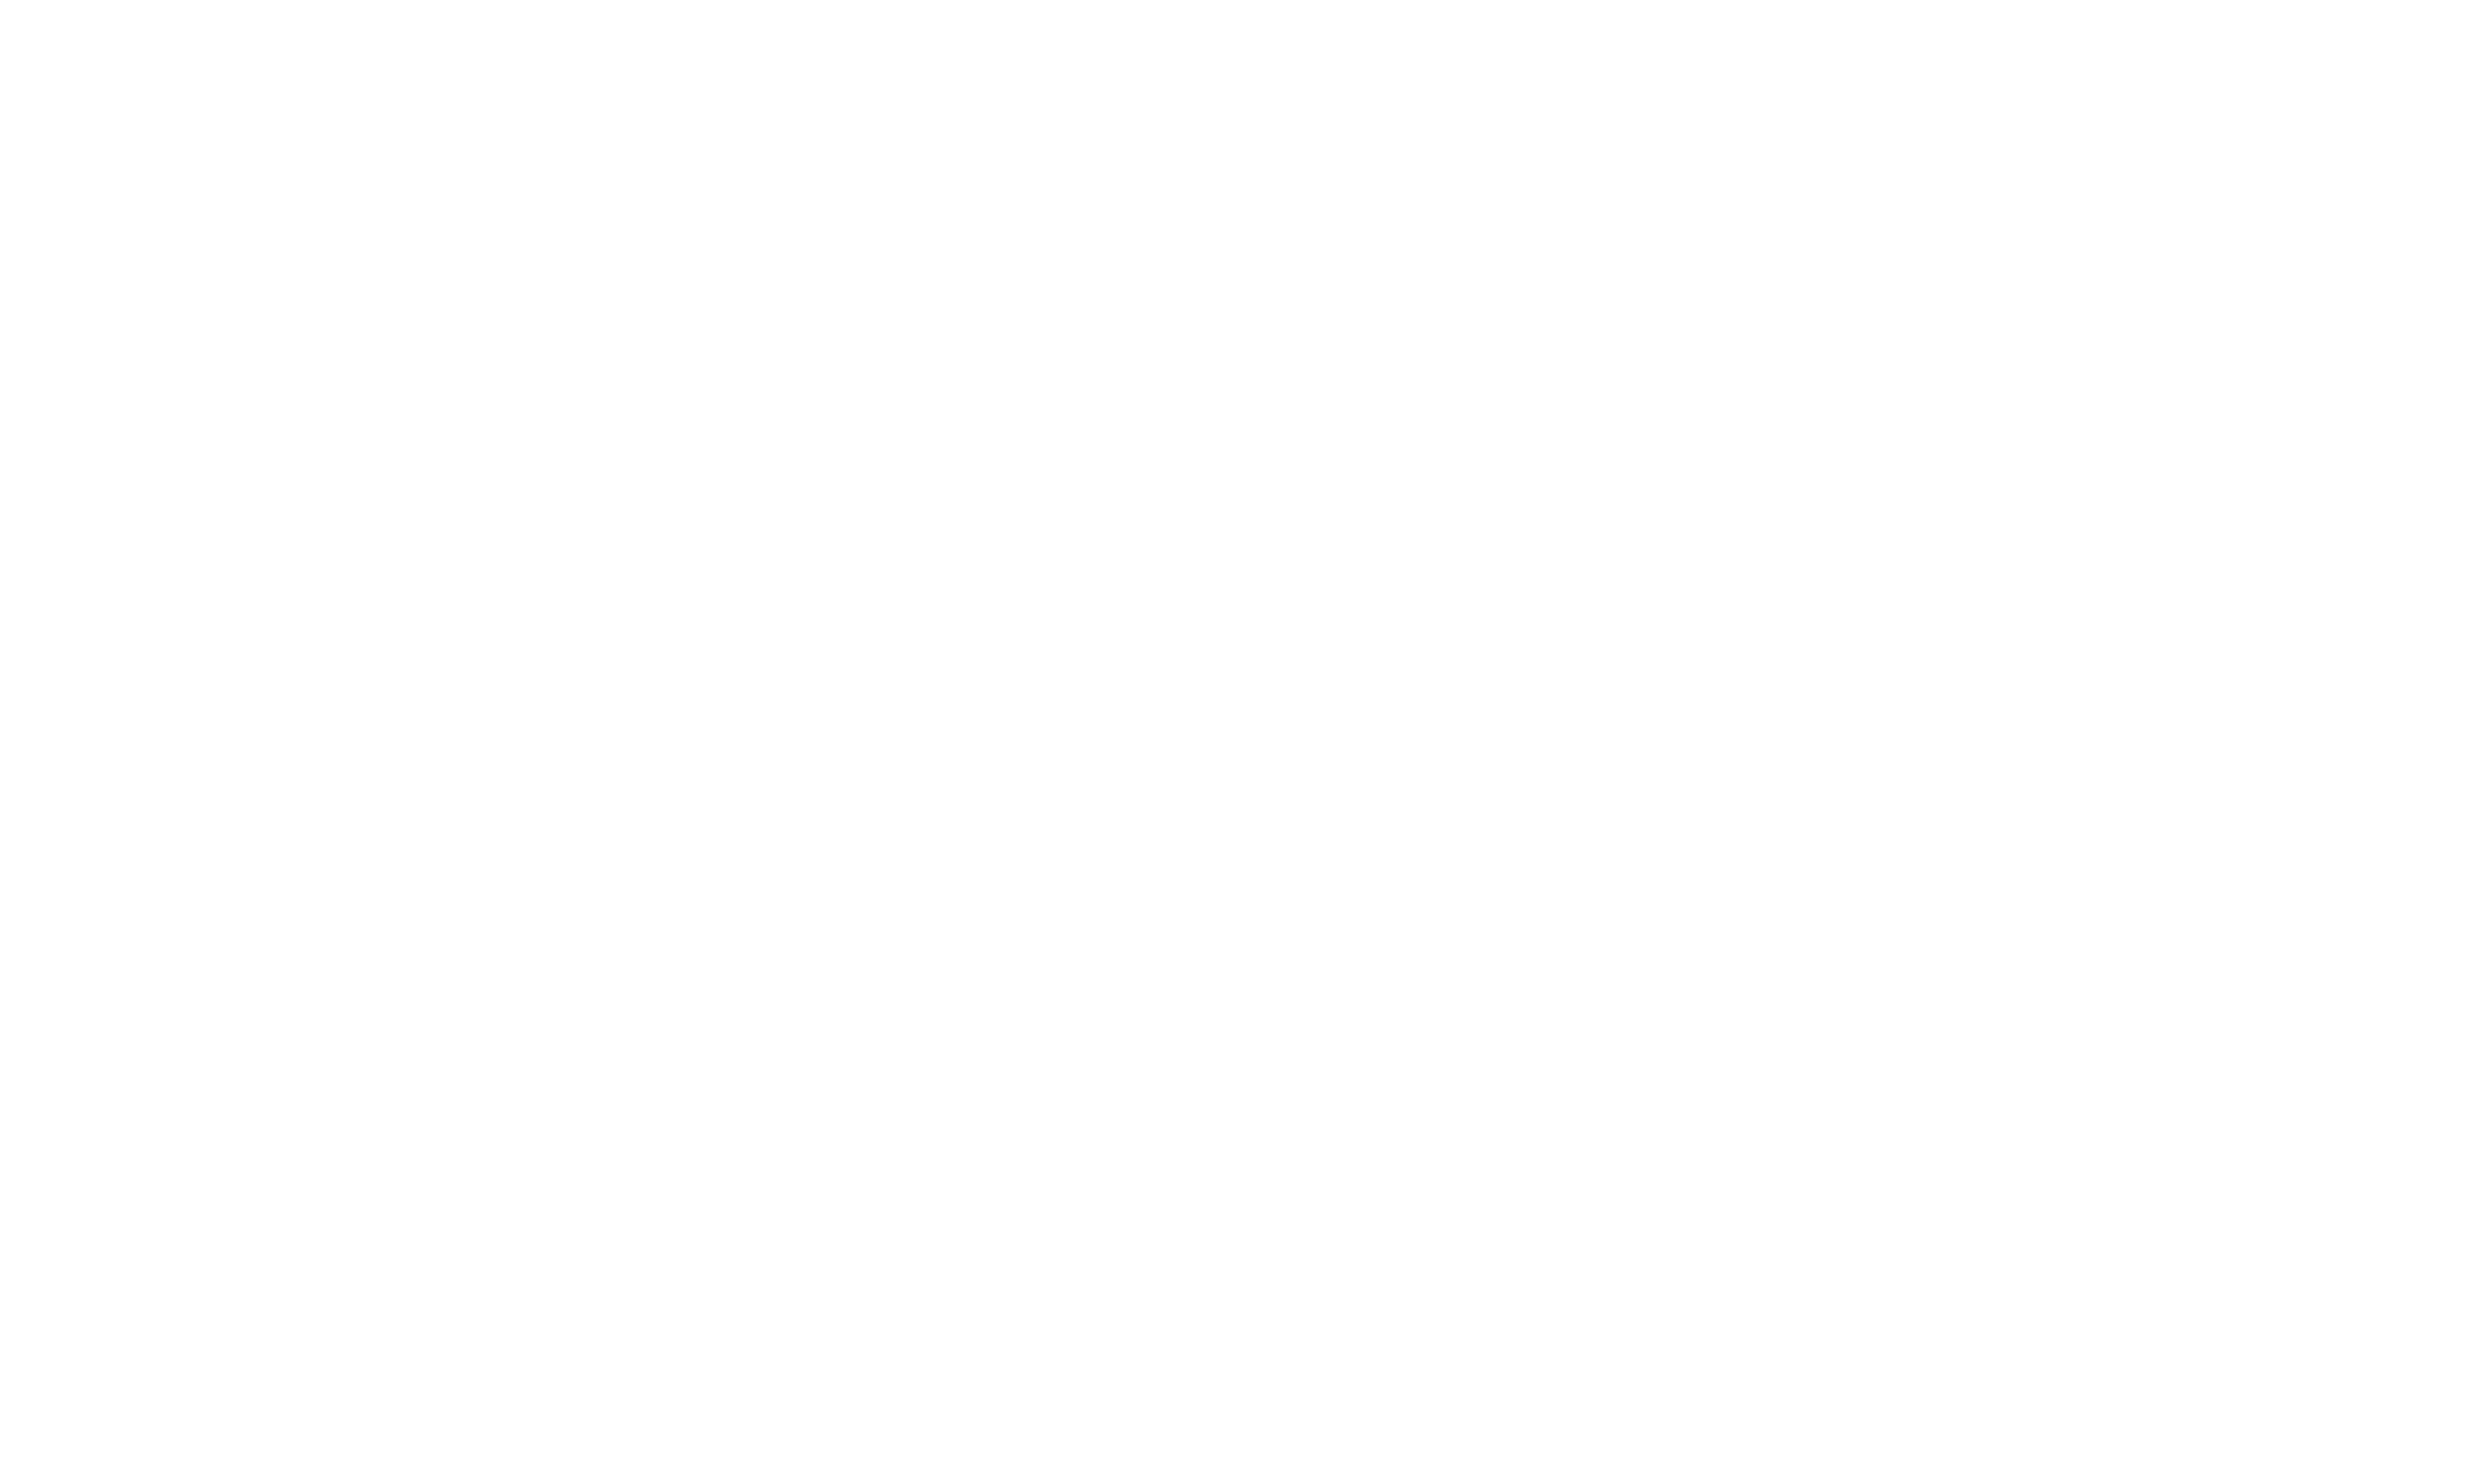 Harmonische Architectuur